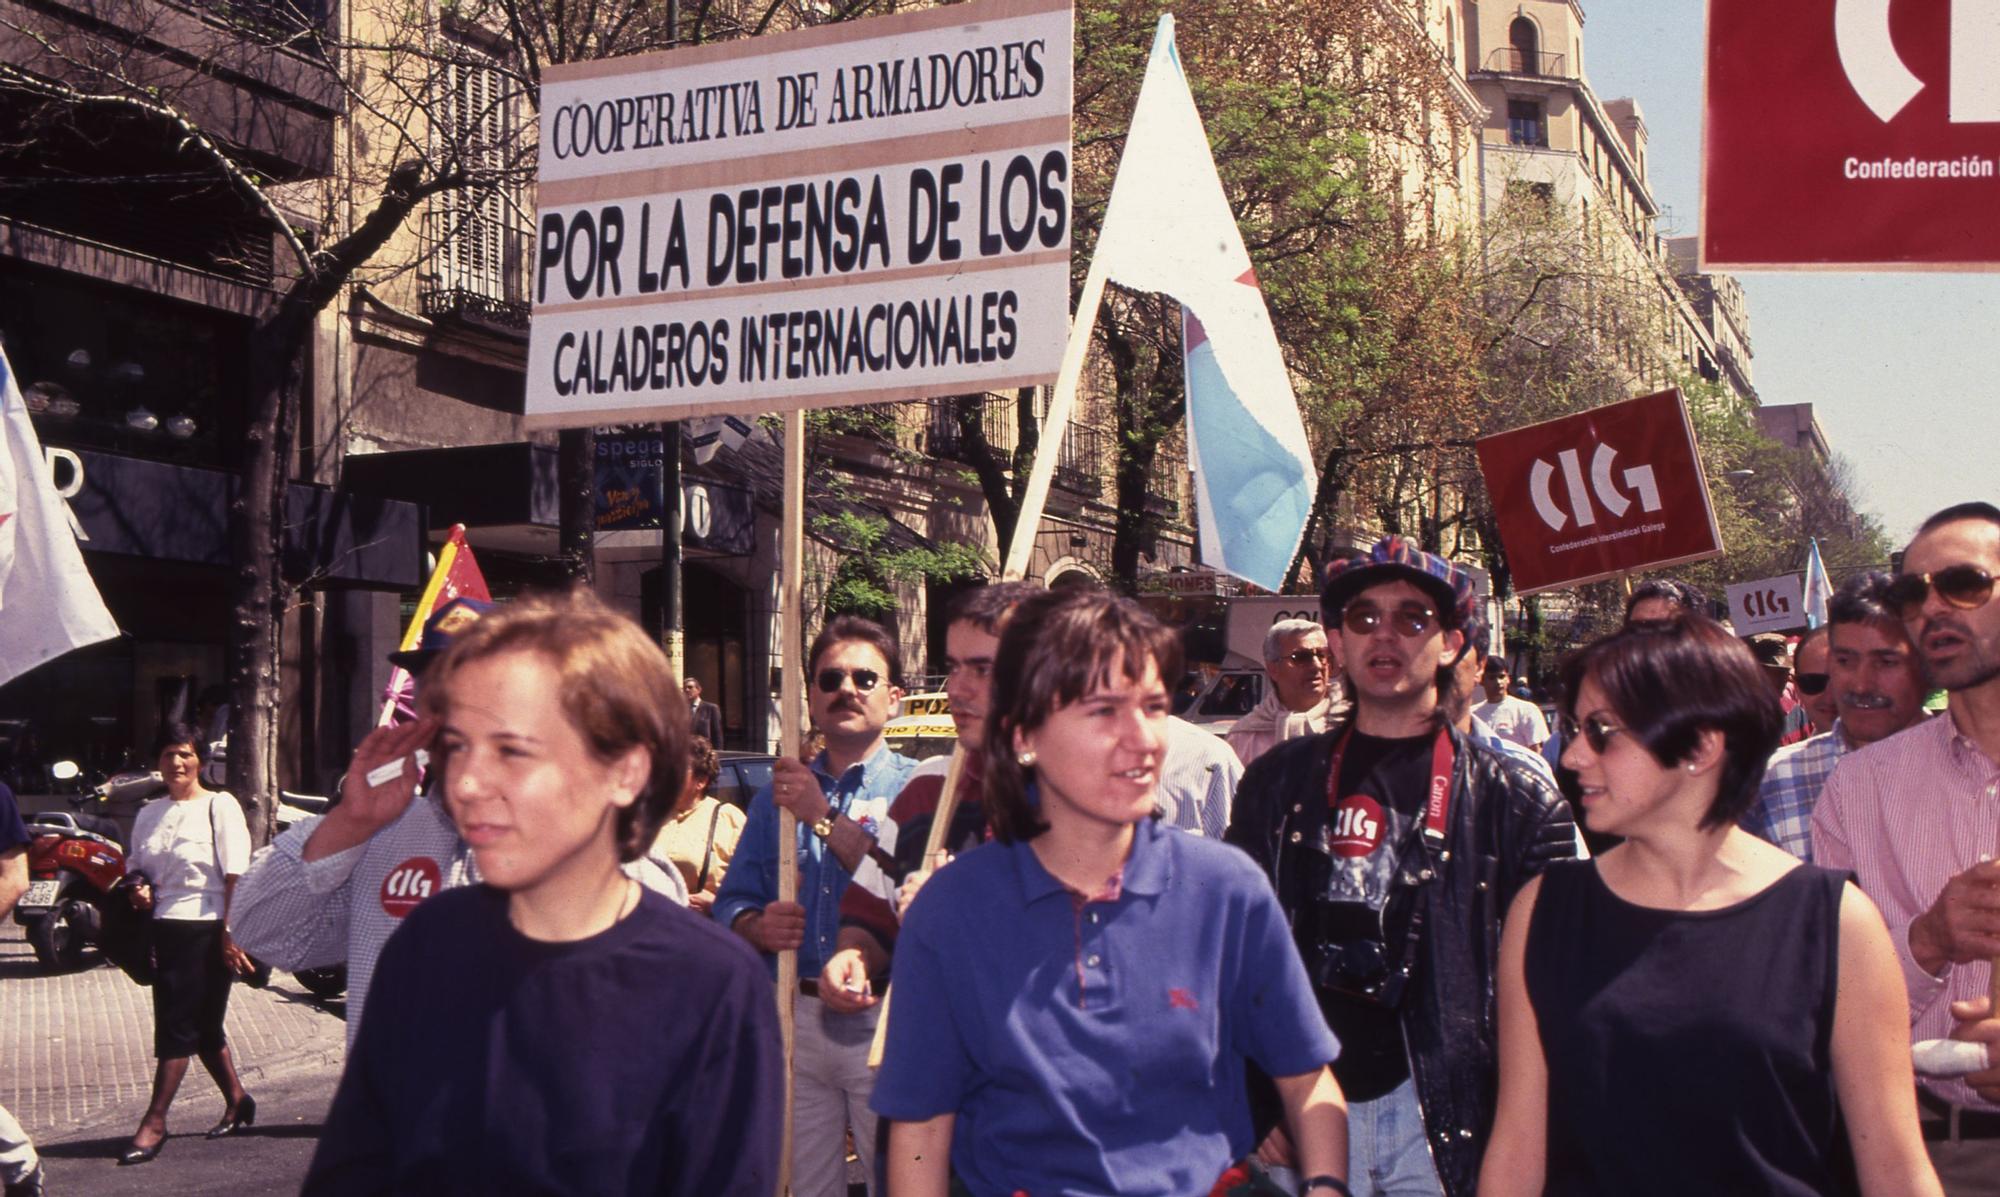 La guerra que tal día como hoy invadió Vigo con 100.000 manifestantes